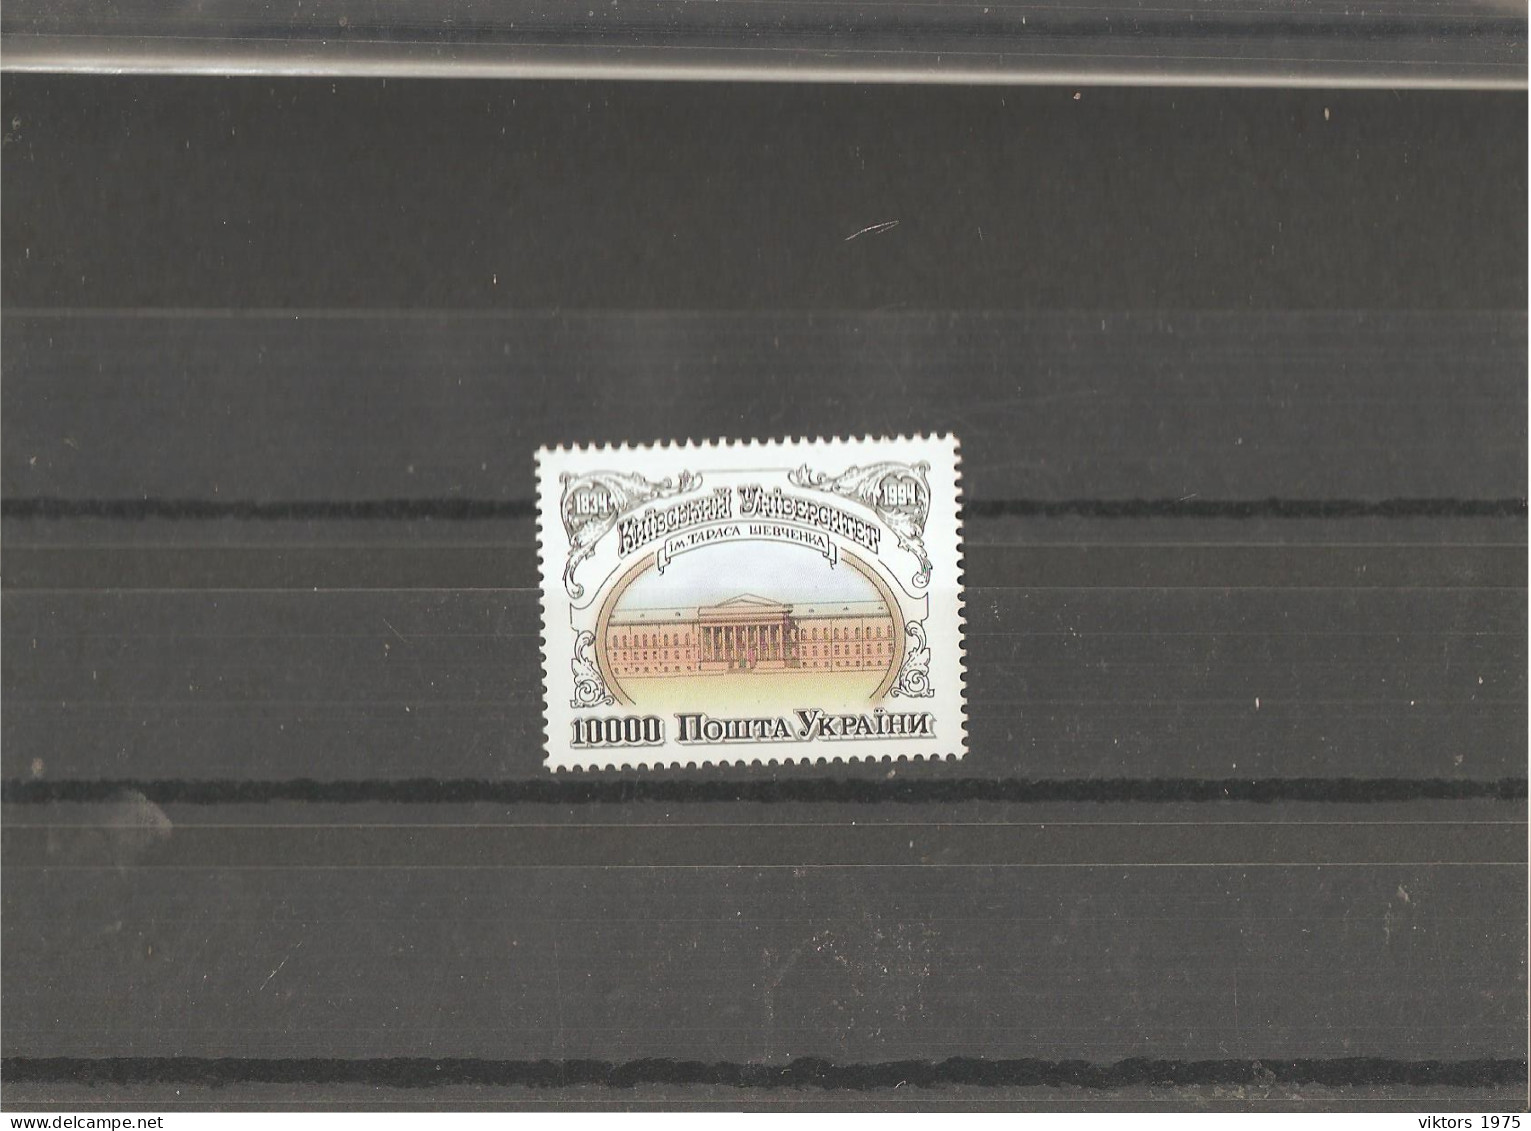 MNH Stamp Nr.120 In MICHEL Catalog - Ukraine